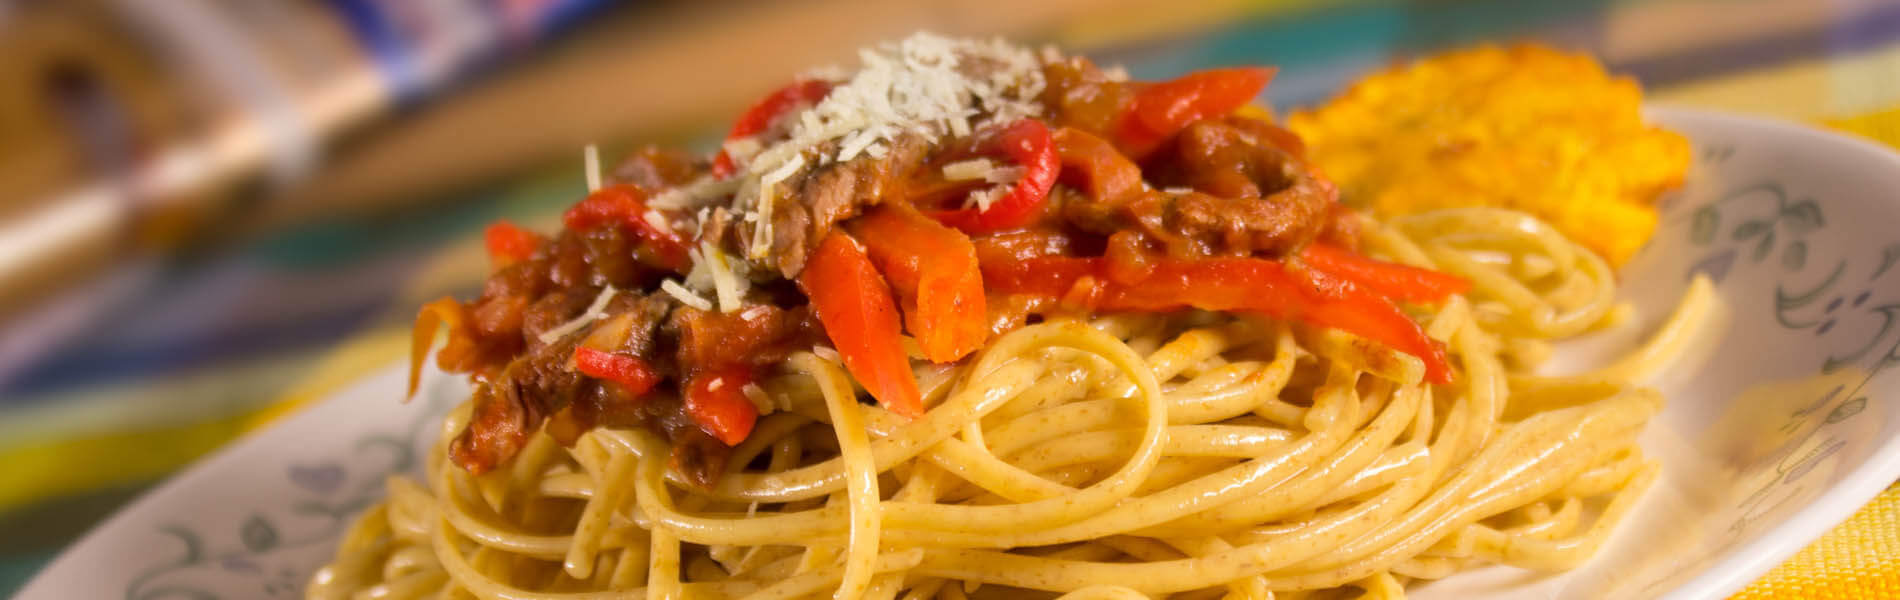 spaghetti-integral-doria-con-salsa-de-tomates-frescos-y-carne